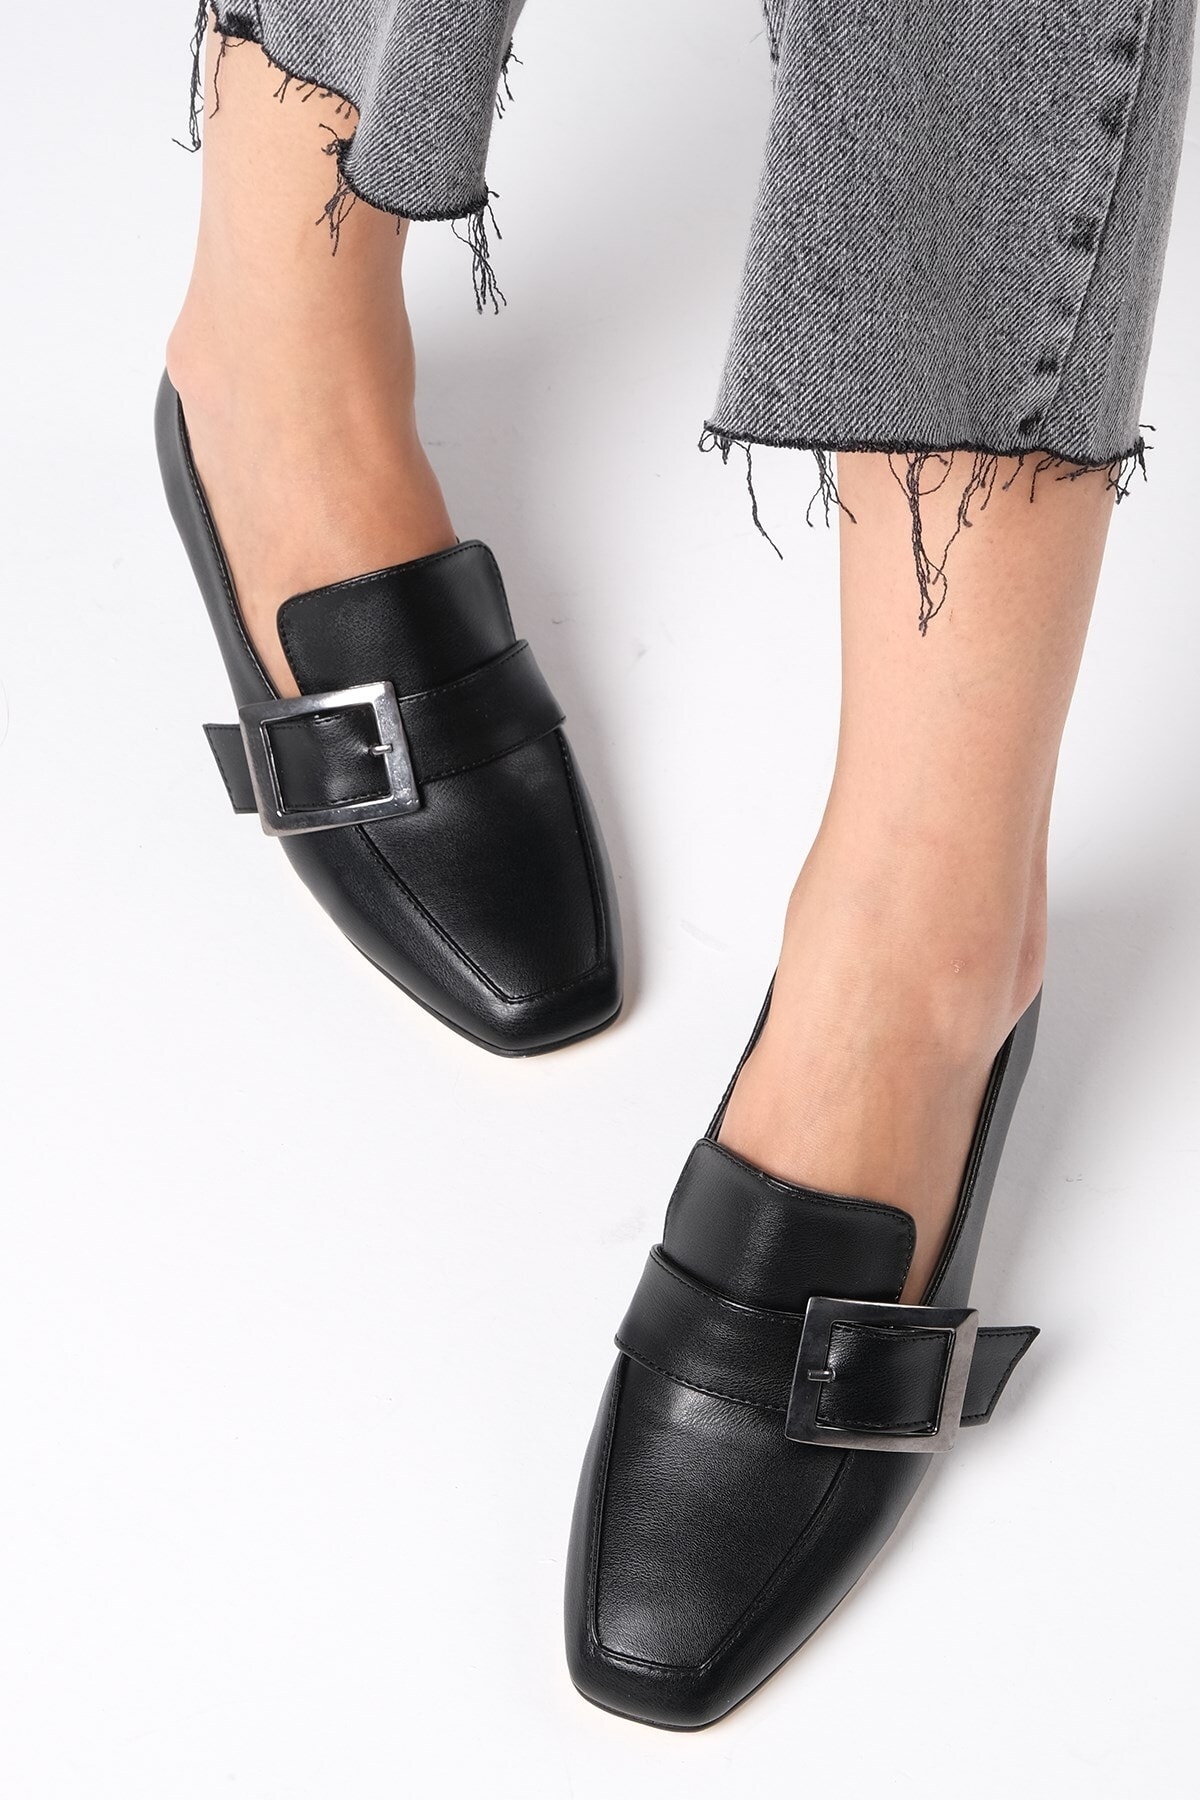 Mio Gusto Ariana Siyah Renk Metal Toka Aksesuarlı Kadın Kısa Topuklu Ayakkabı